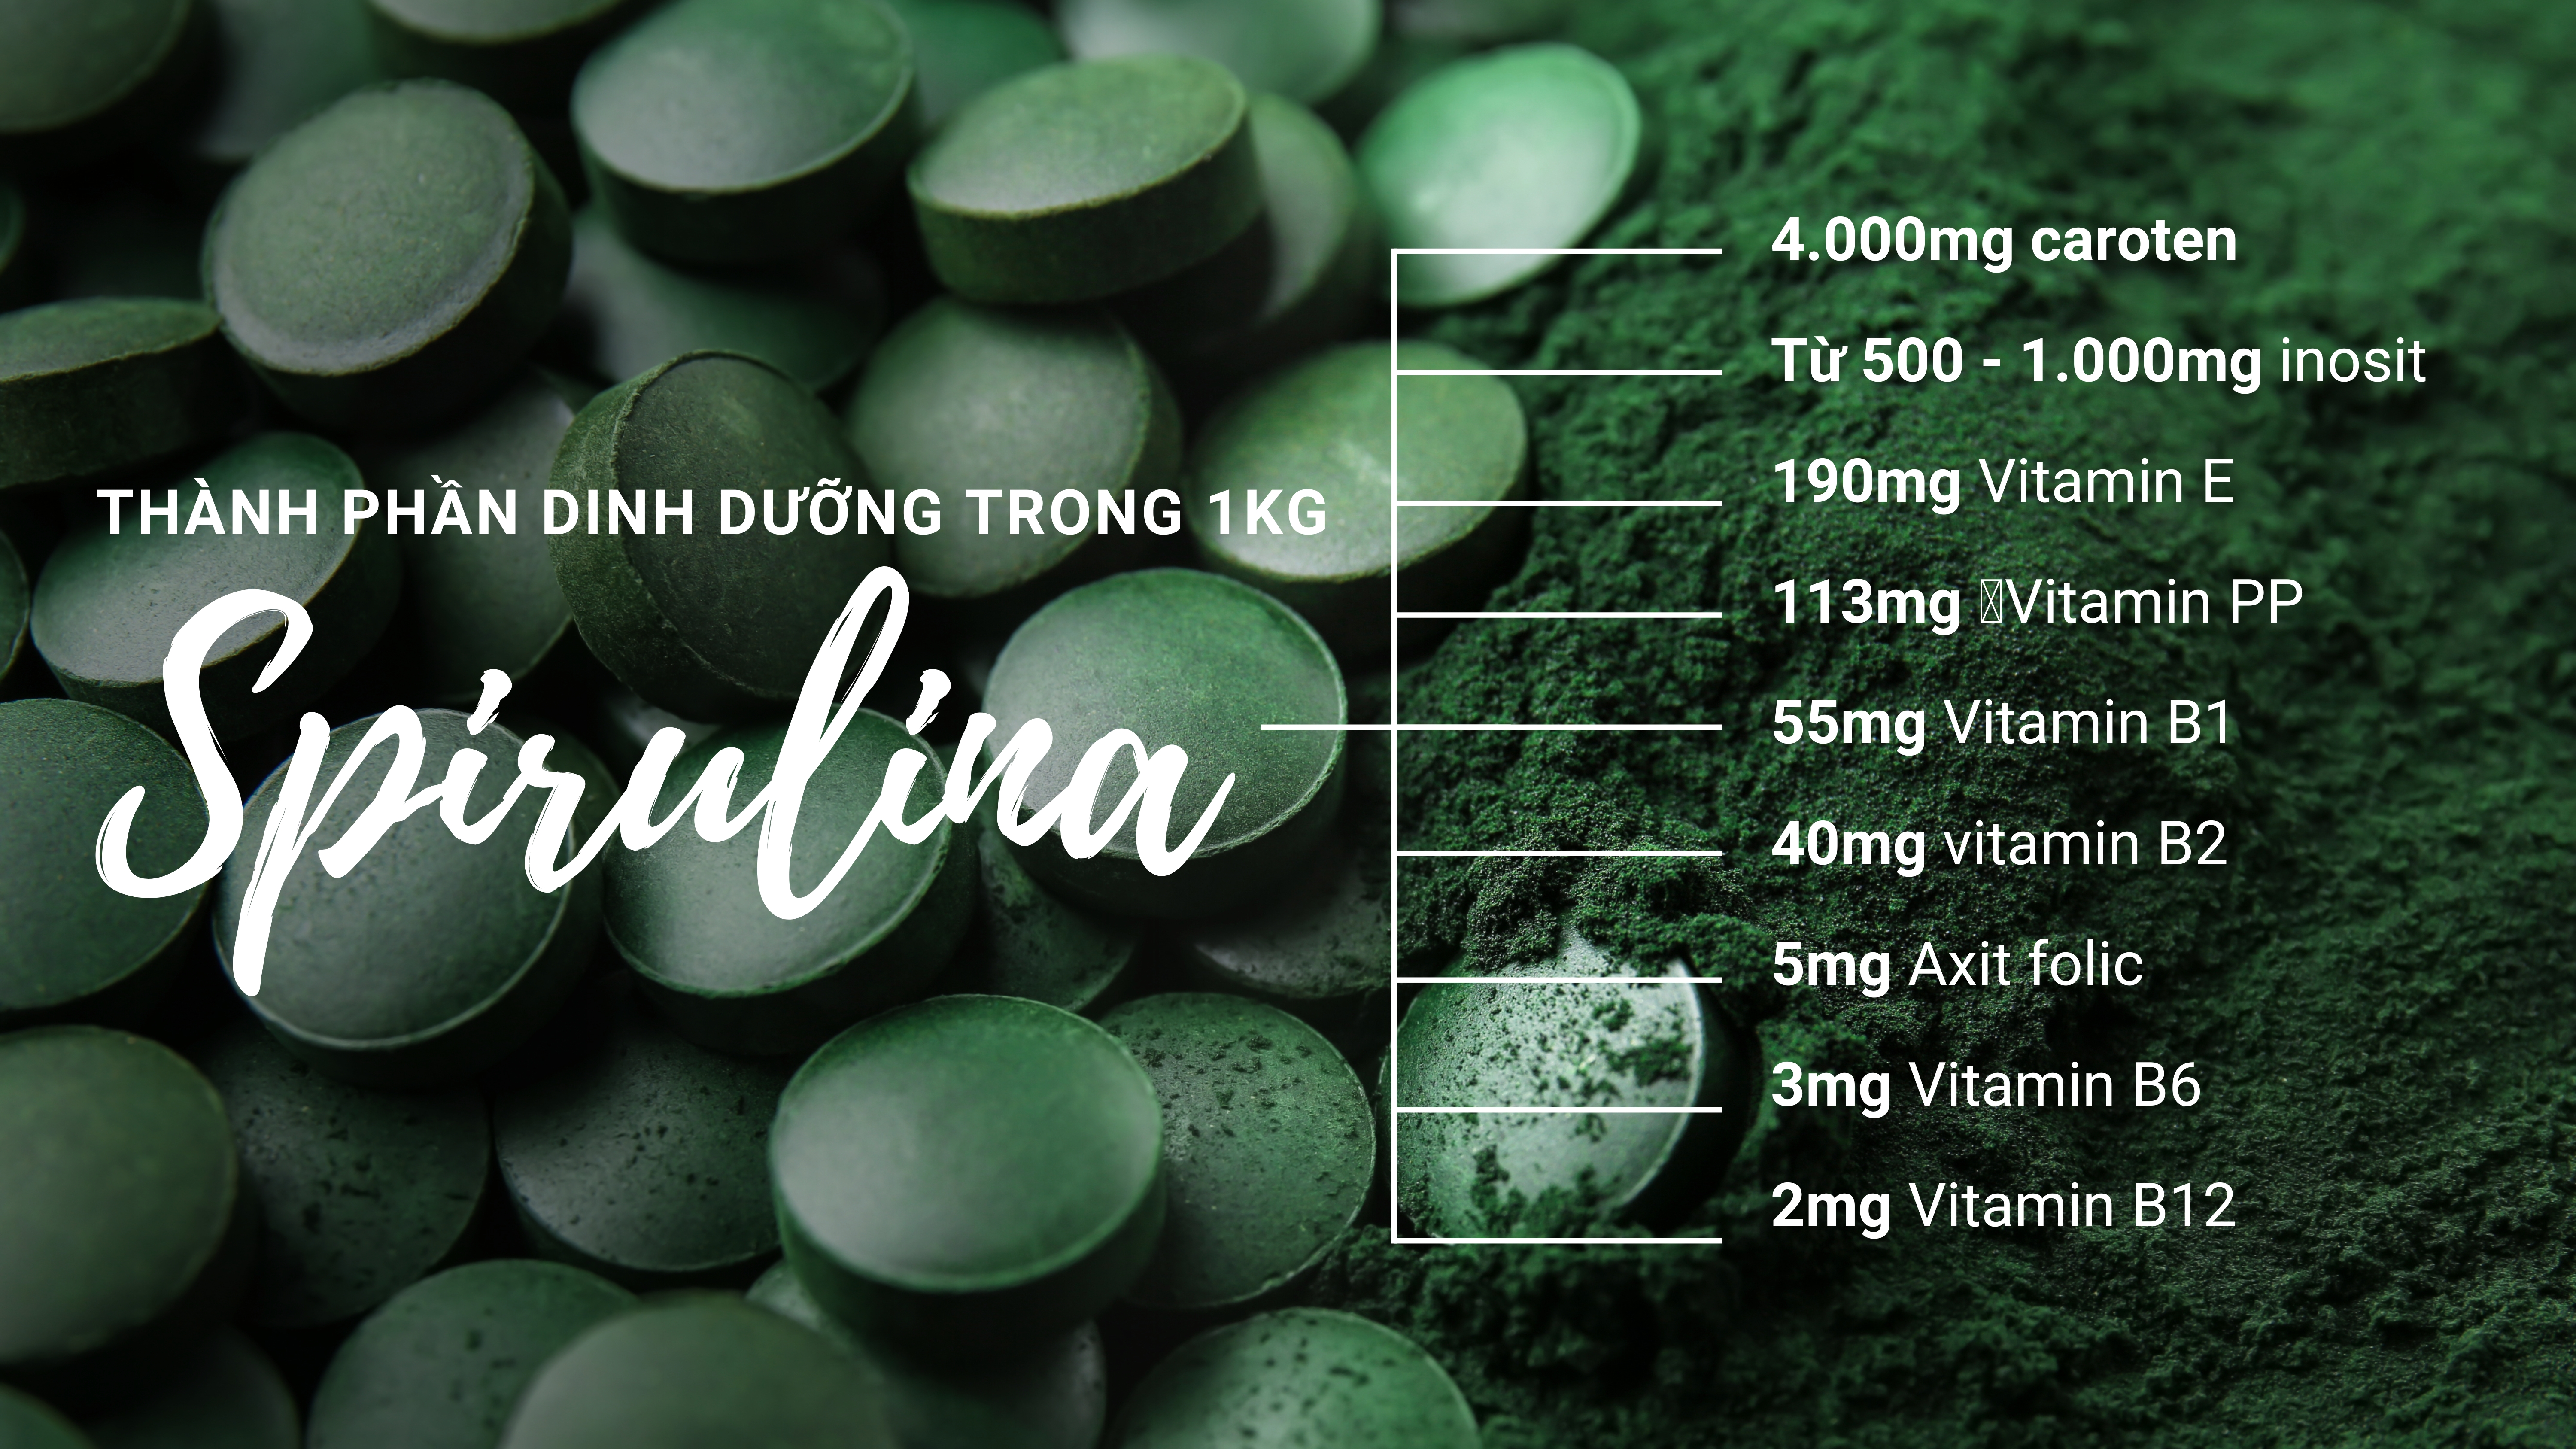 Tập đoàn Đại Việt và hành trình đưa tảo Spirulina đến người dùng Việt  - Ảnh 3